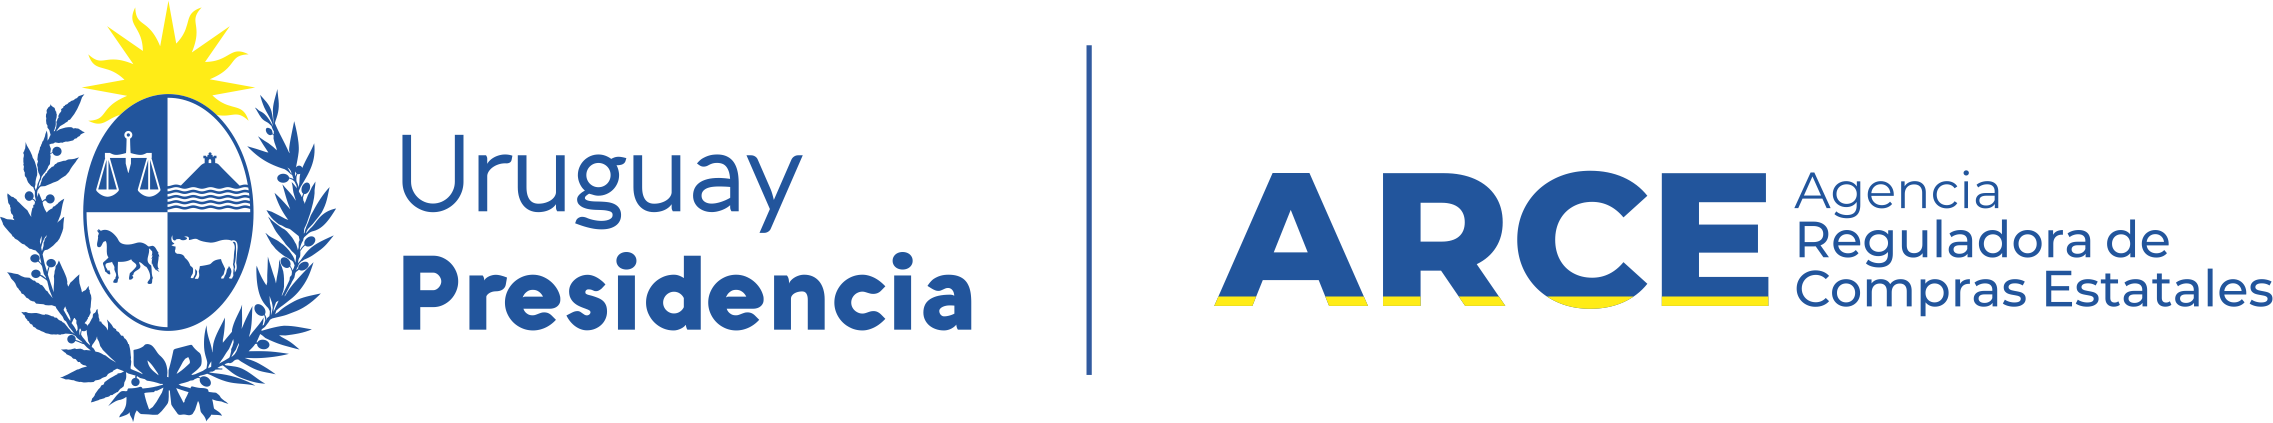 Logo Agencia Reguladora de Compras Estatales